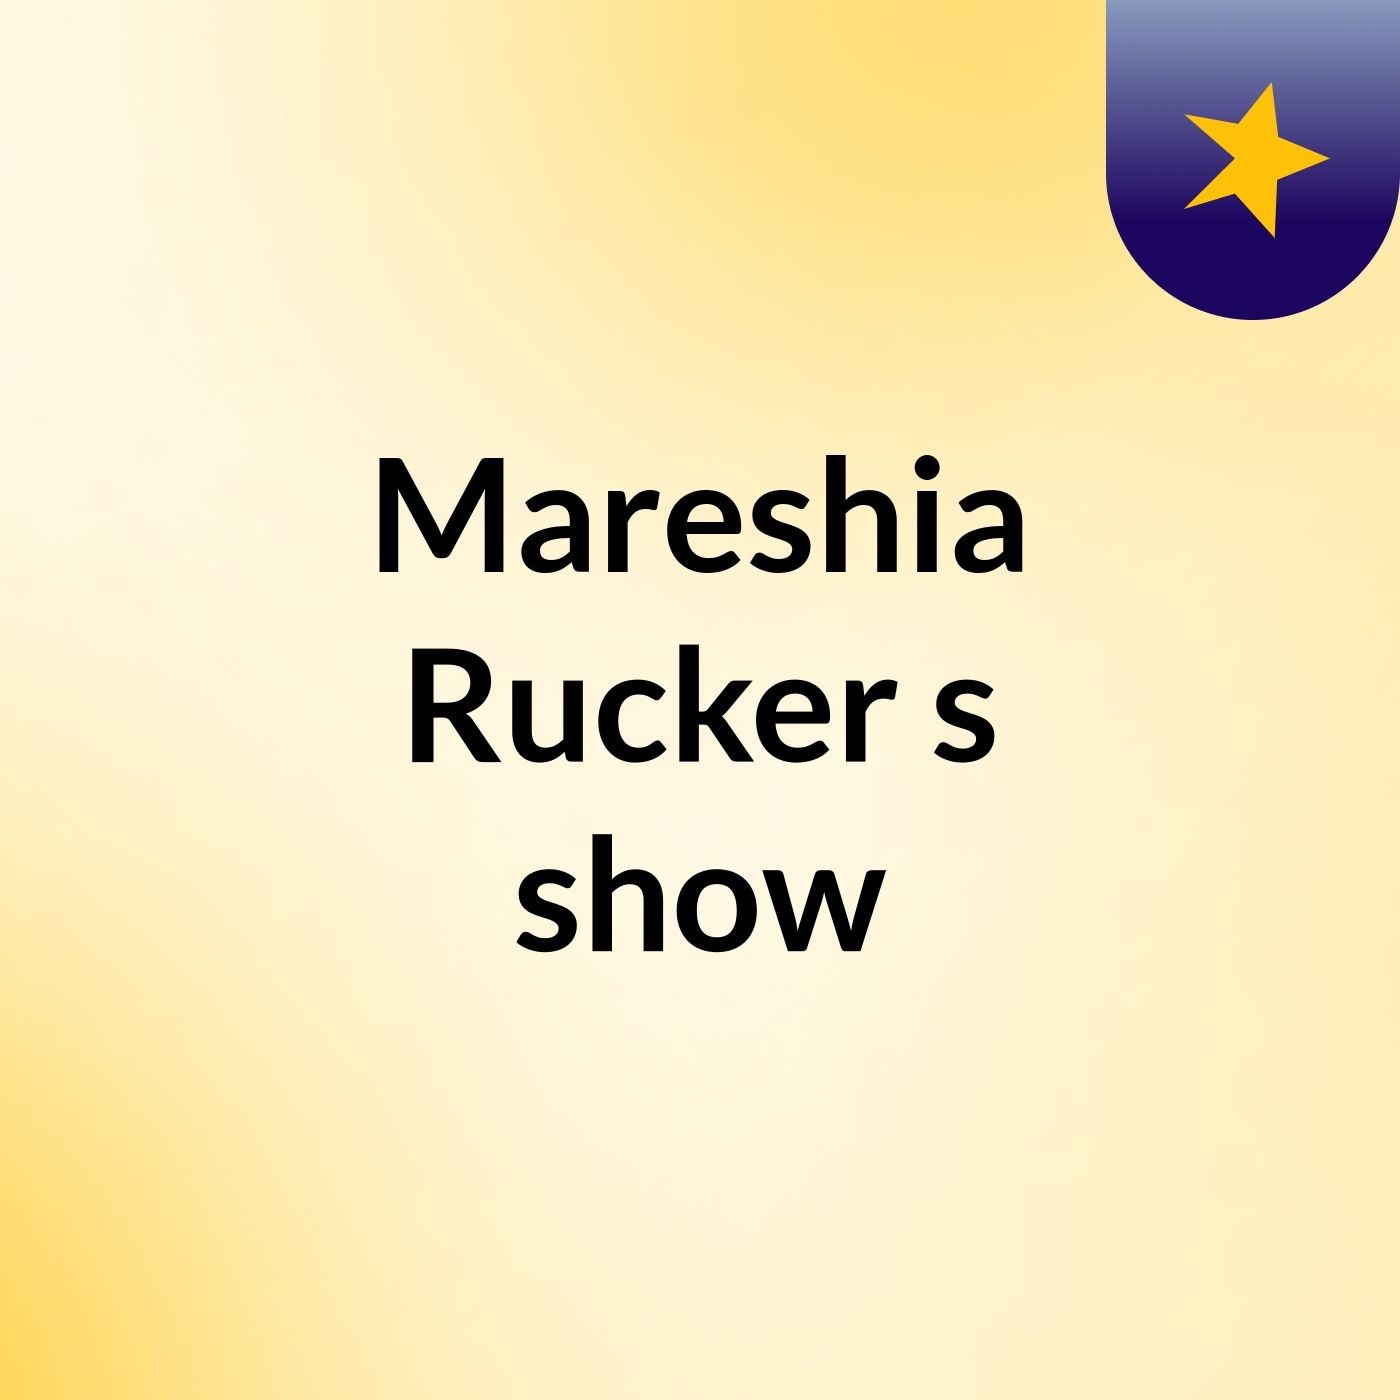 Mareshia Rucker's show